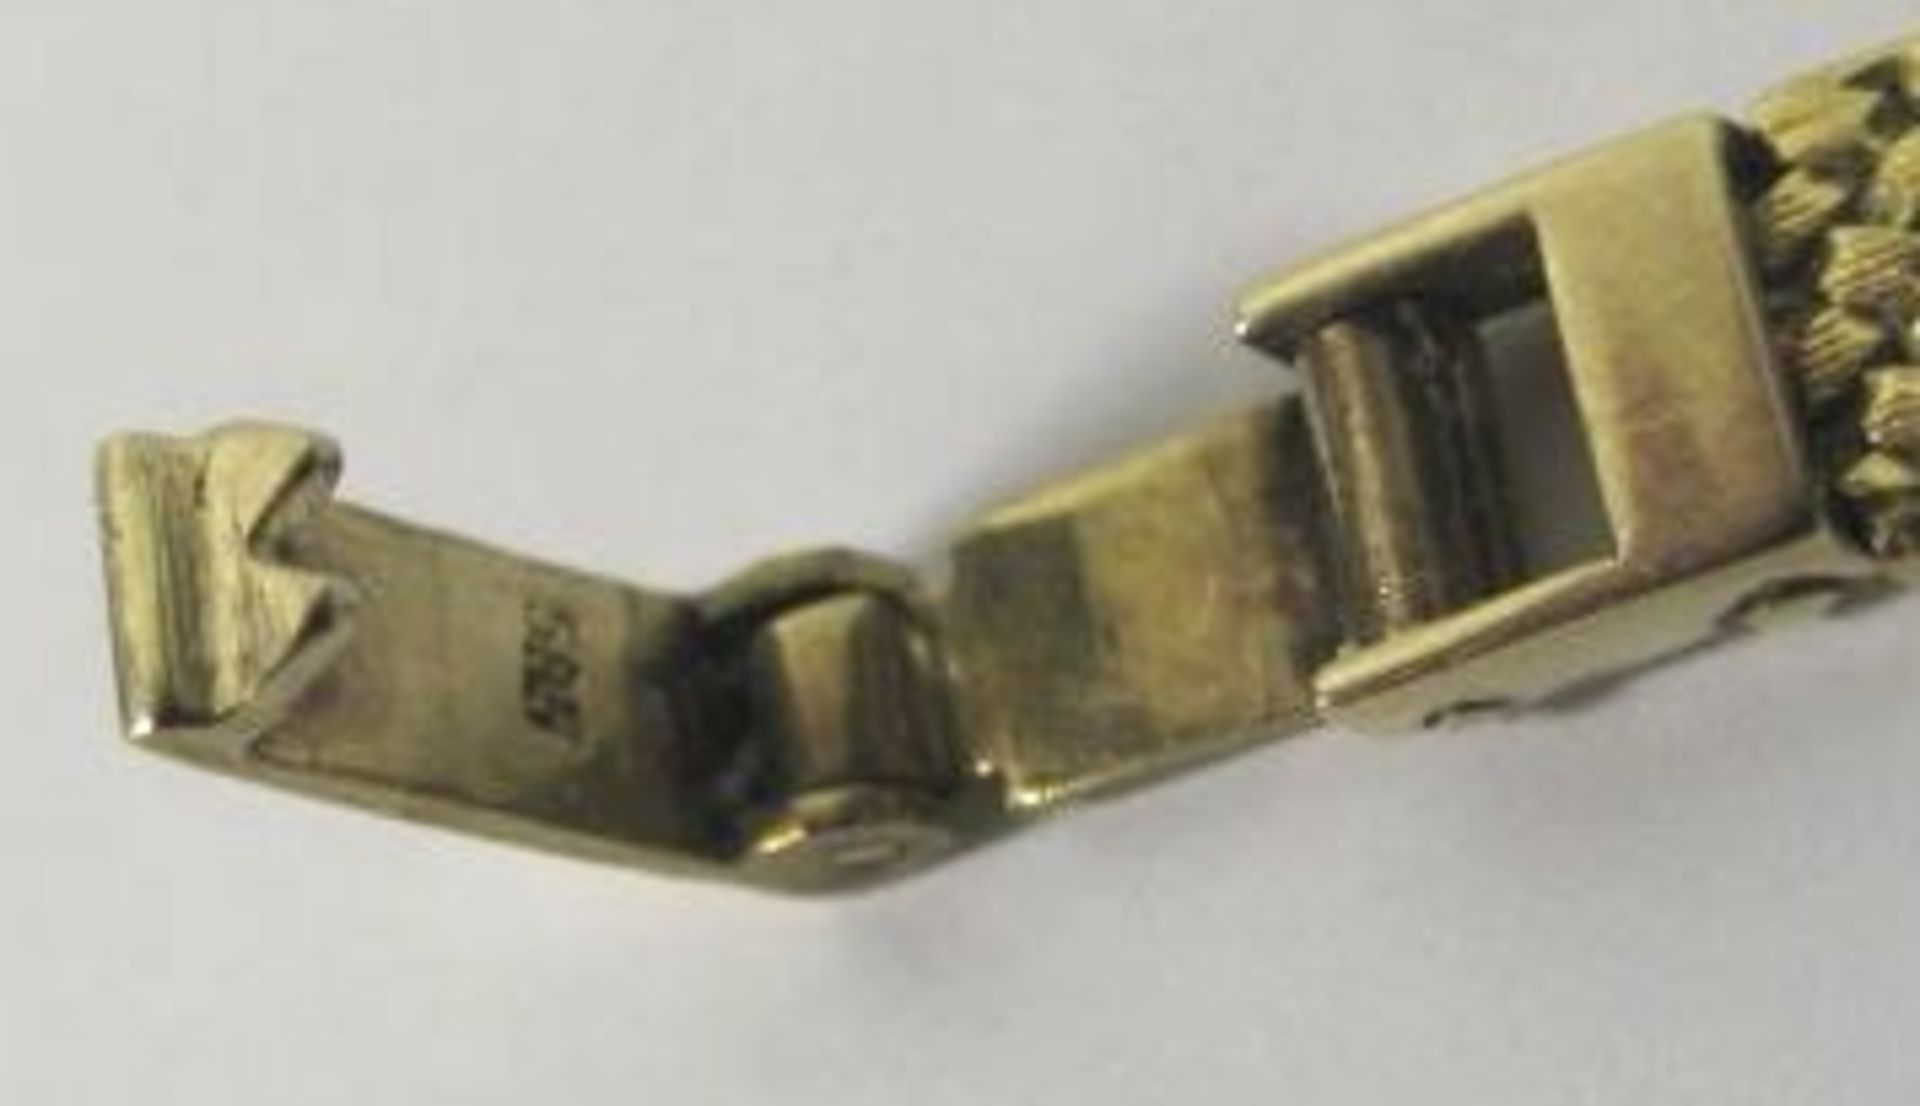 DAU "Tissot", 585er GG Armband, Werk läuft, Tragespuren, anbei Stück vom Armband, komplett 27,7g, - Bild 3 aus 3